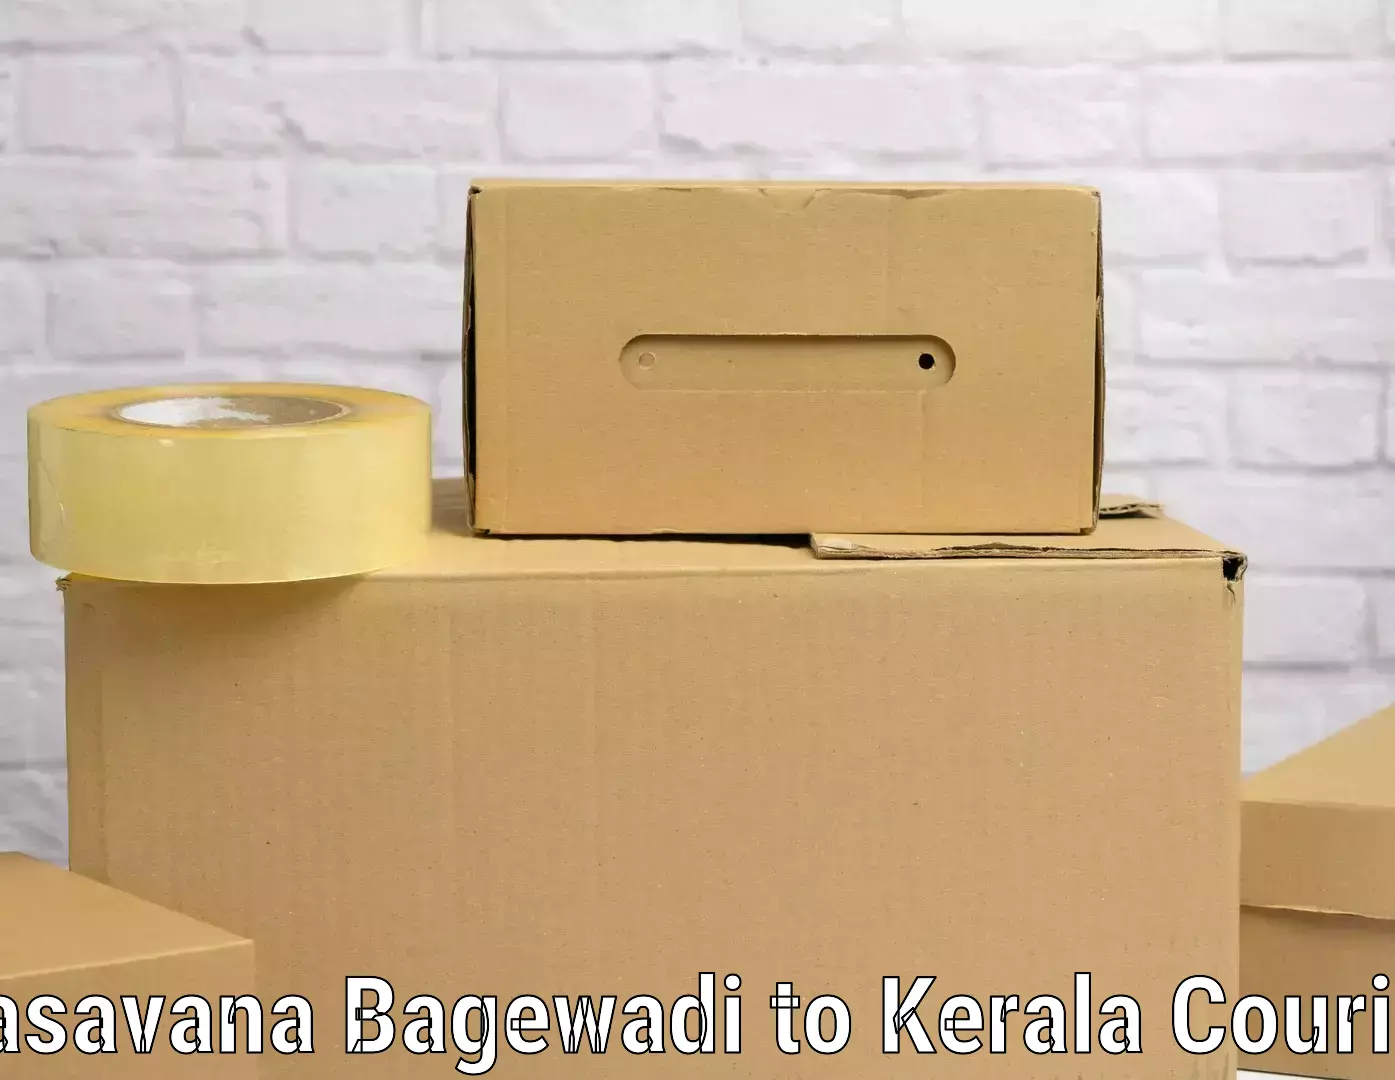 Global baggage shipping Basavana Bagewadi to Kerala